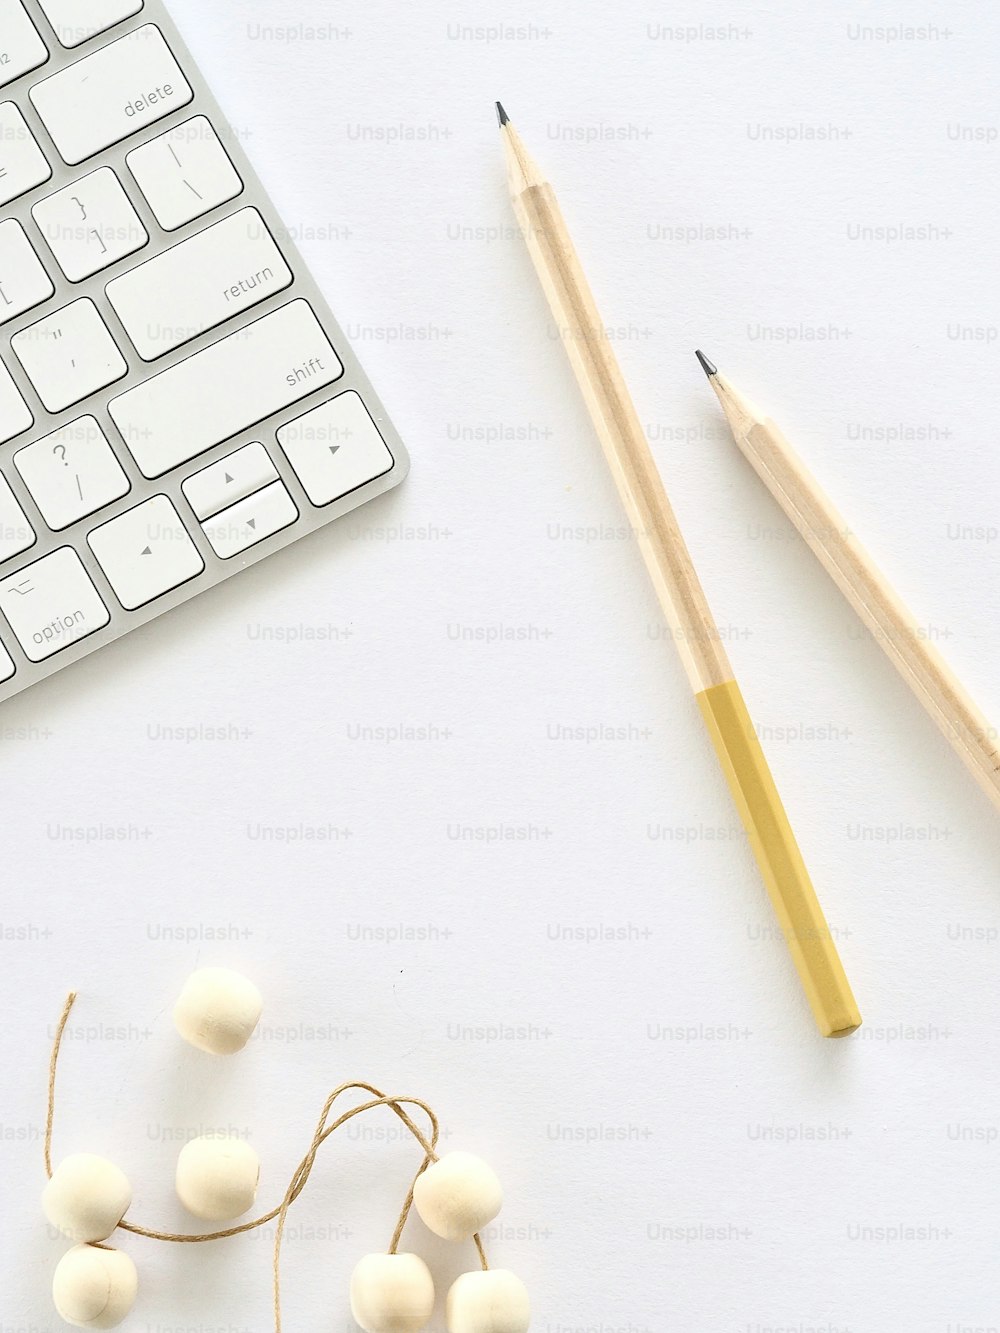 eine Tastatur, Bleistifte und ein paar Wattebällchen auf einem Schreibtisch